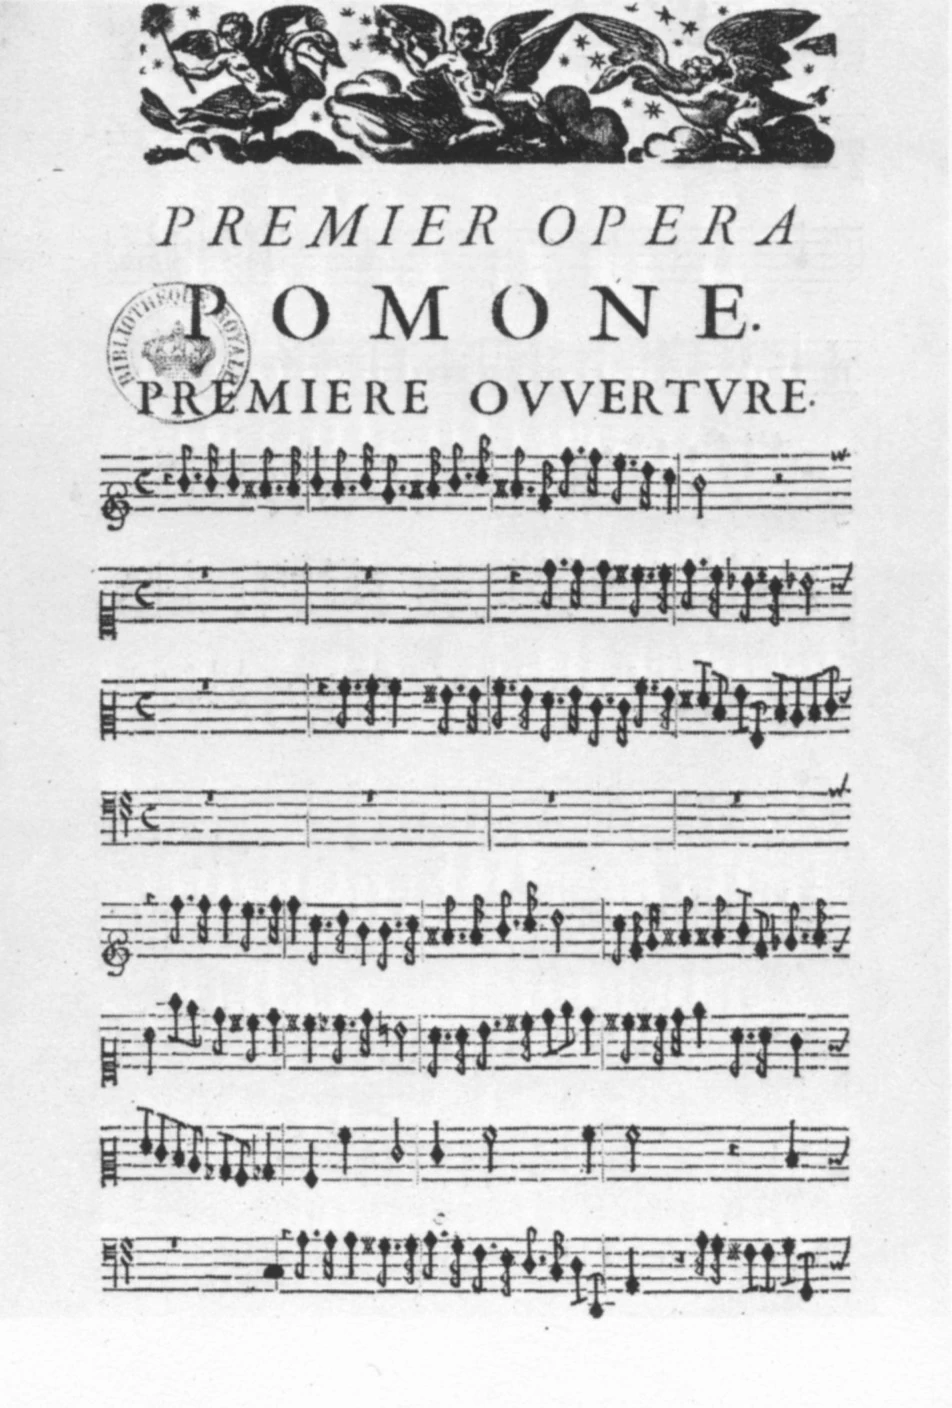 Livret de Pomone par Robert CAMBERT, le premier opéra français de l'histoire. Image choisie par monsieurdefrance.com : Wikicommons.